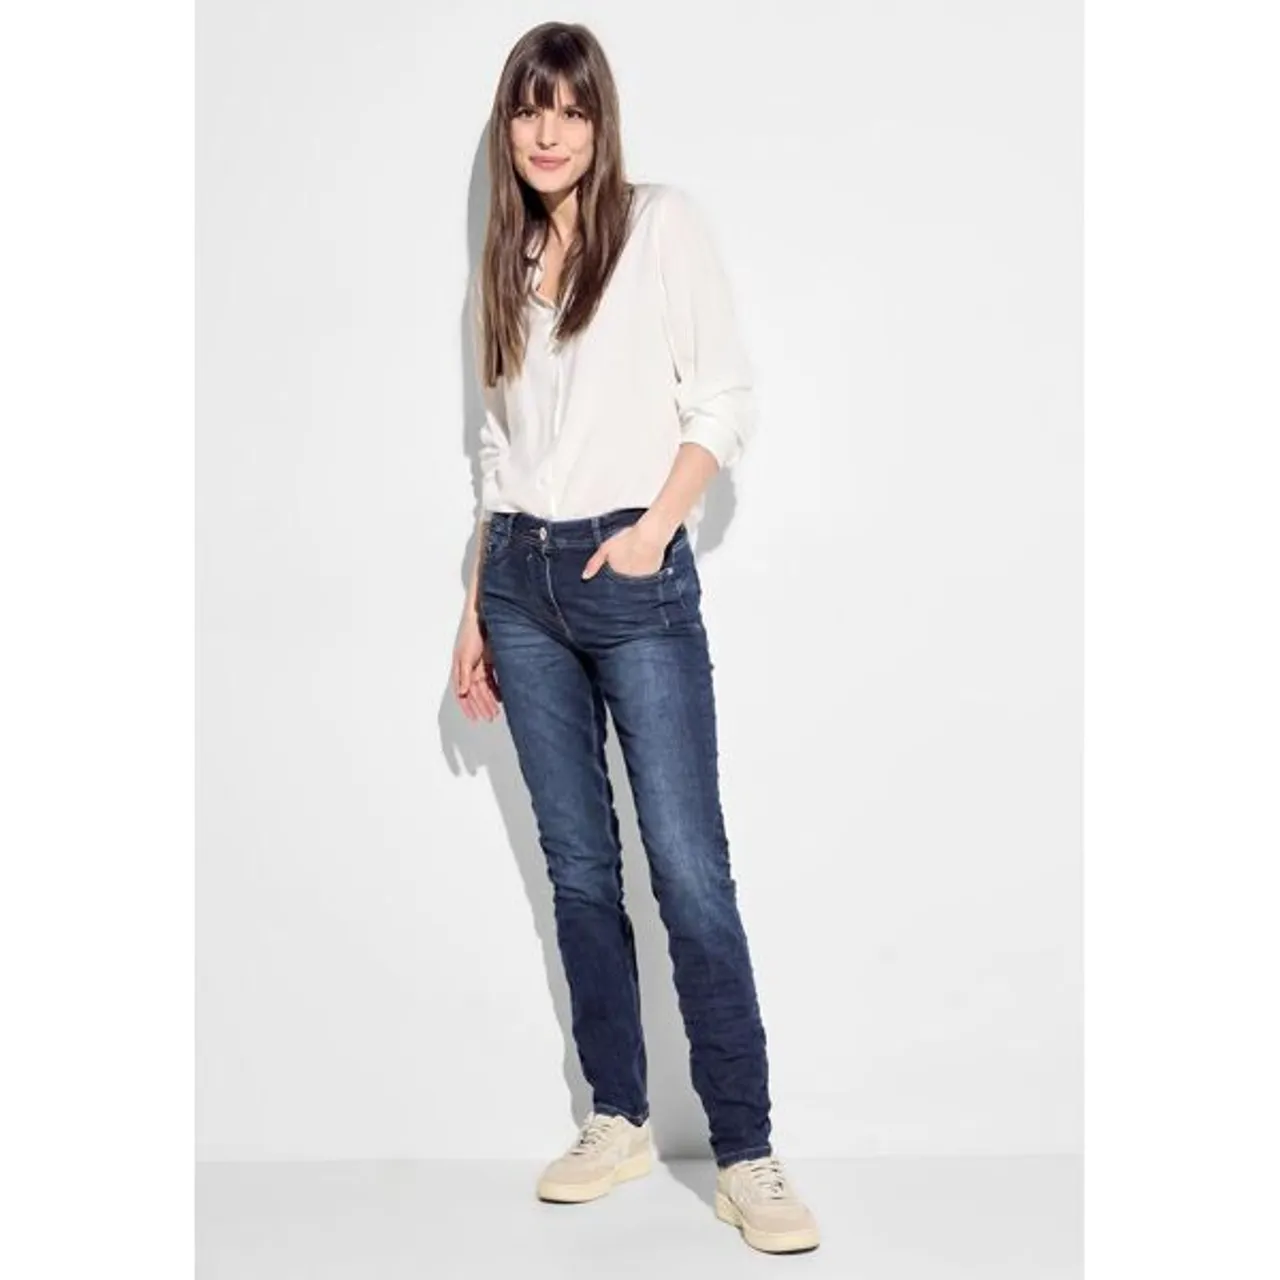 Slim-fit-Jeans CECIL Gr. 28, Länge 30, blau (mid blue wash) Damen Jeans Röhrenjeans mit 5-Pcket Design